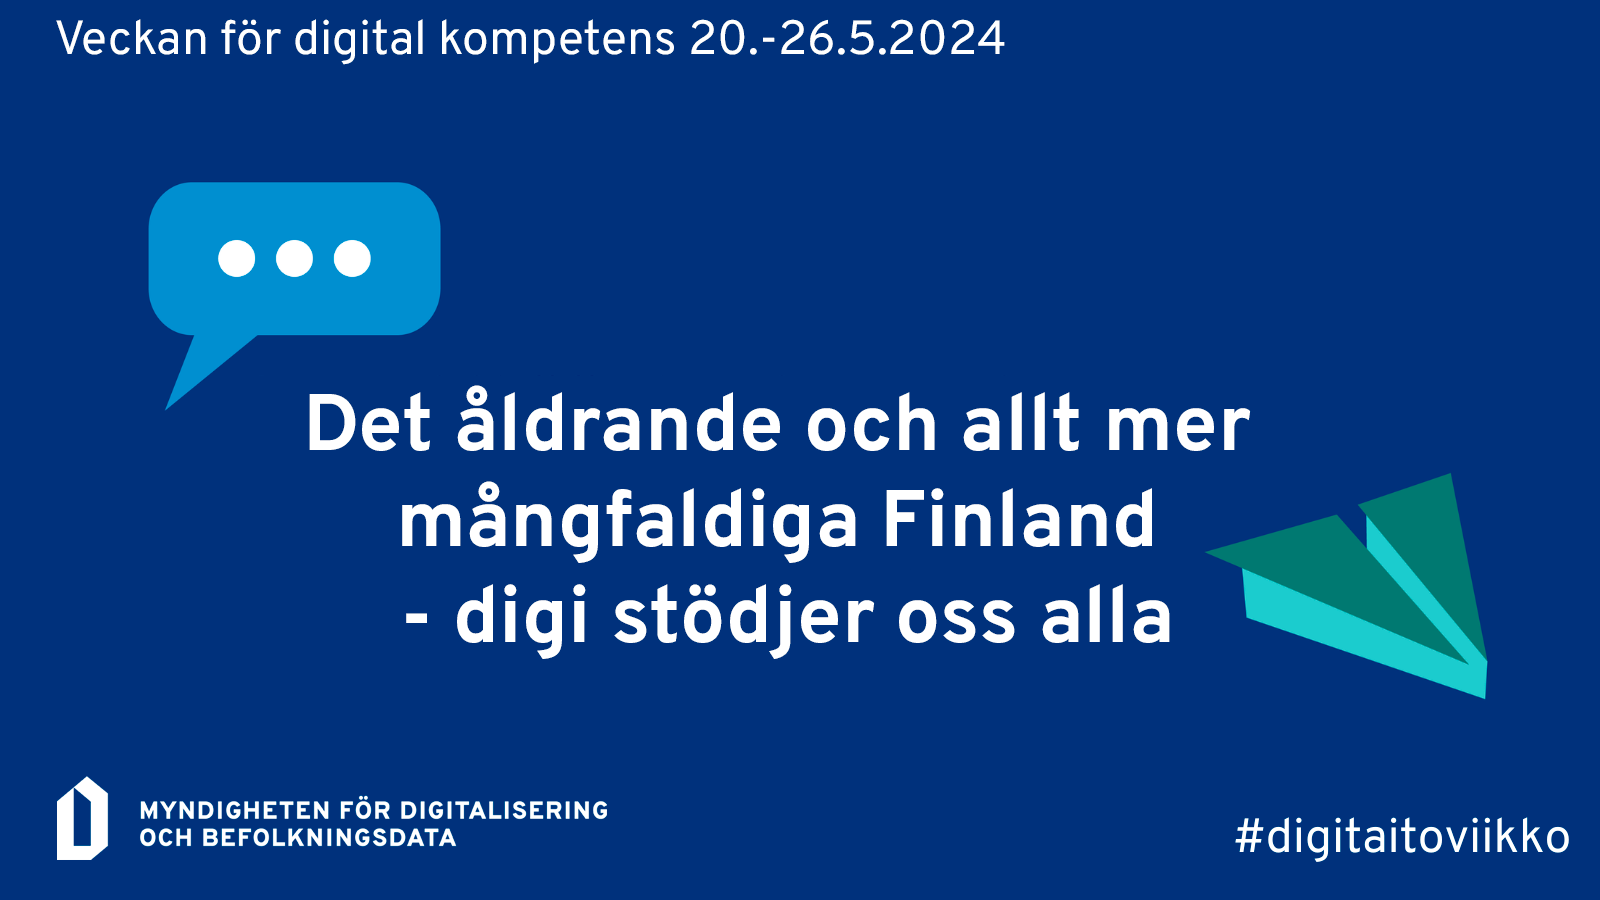 En ikon som förklarar att Veckan för digital kompetens ordnas 20-26 maj 2024 och att temat för veckan är "Finland åldras och blir mer mångfaldiga - Digi stöder oss alla".